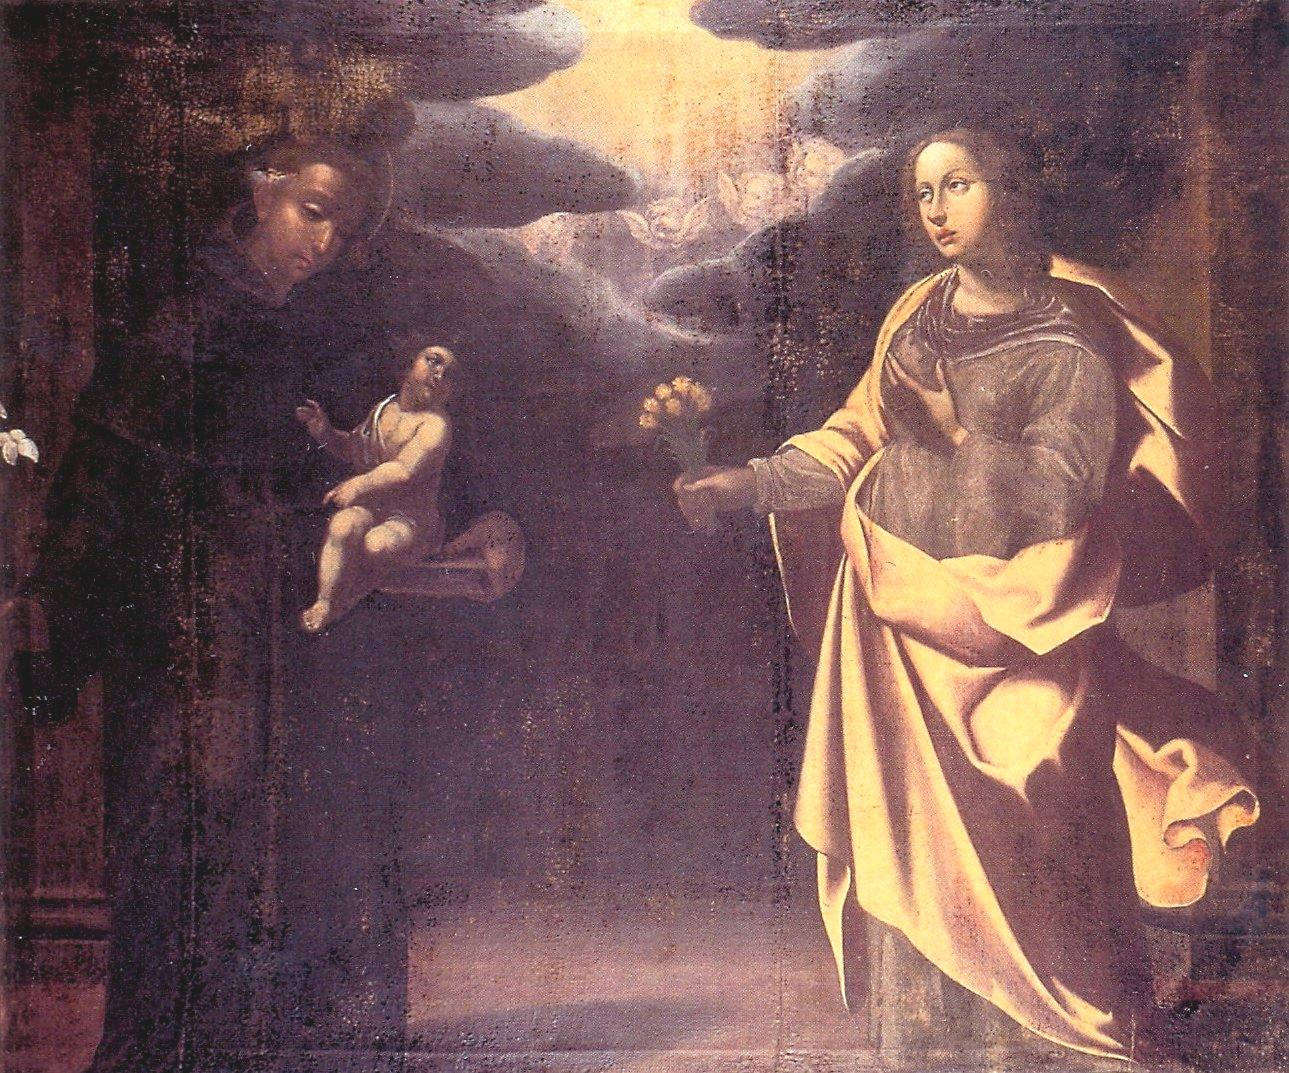 Navata sinistra: Ignoto di scuola fiorentina fine 1600, Sant Antonio da Padova, olio su tela, cm. 145x121.